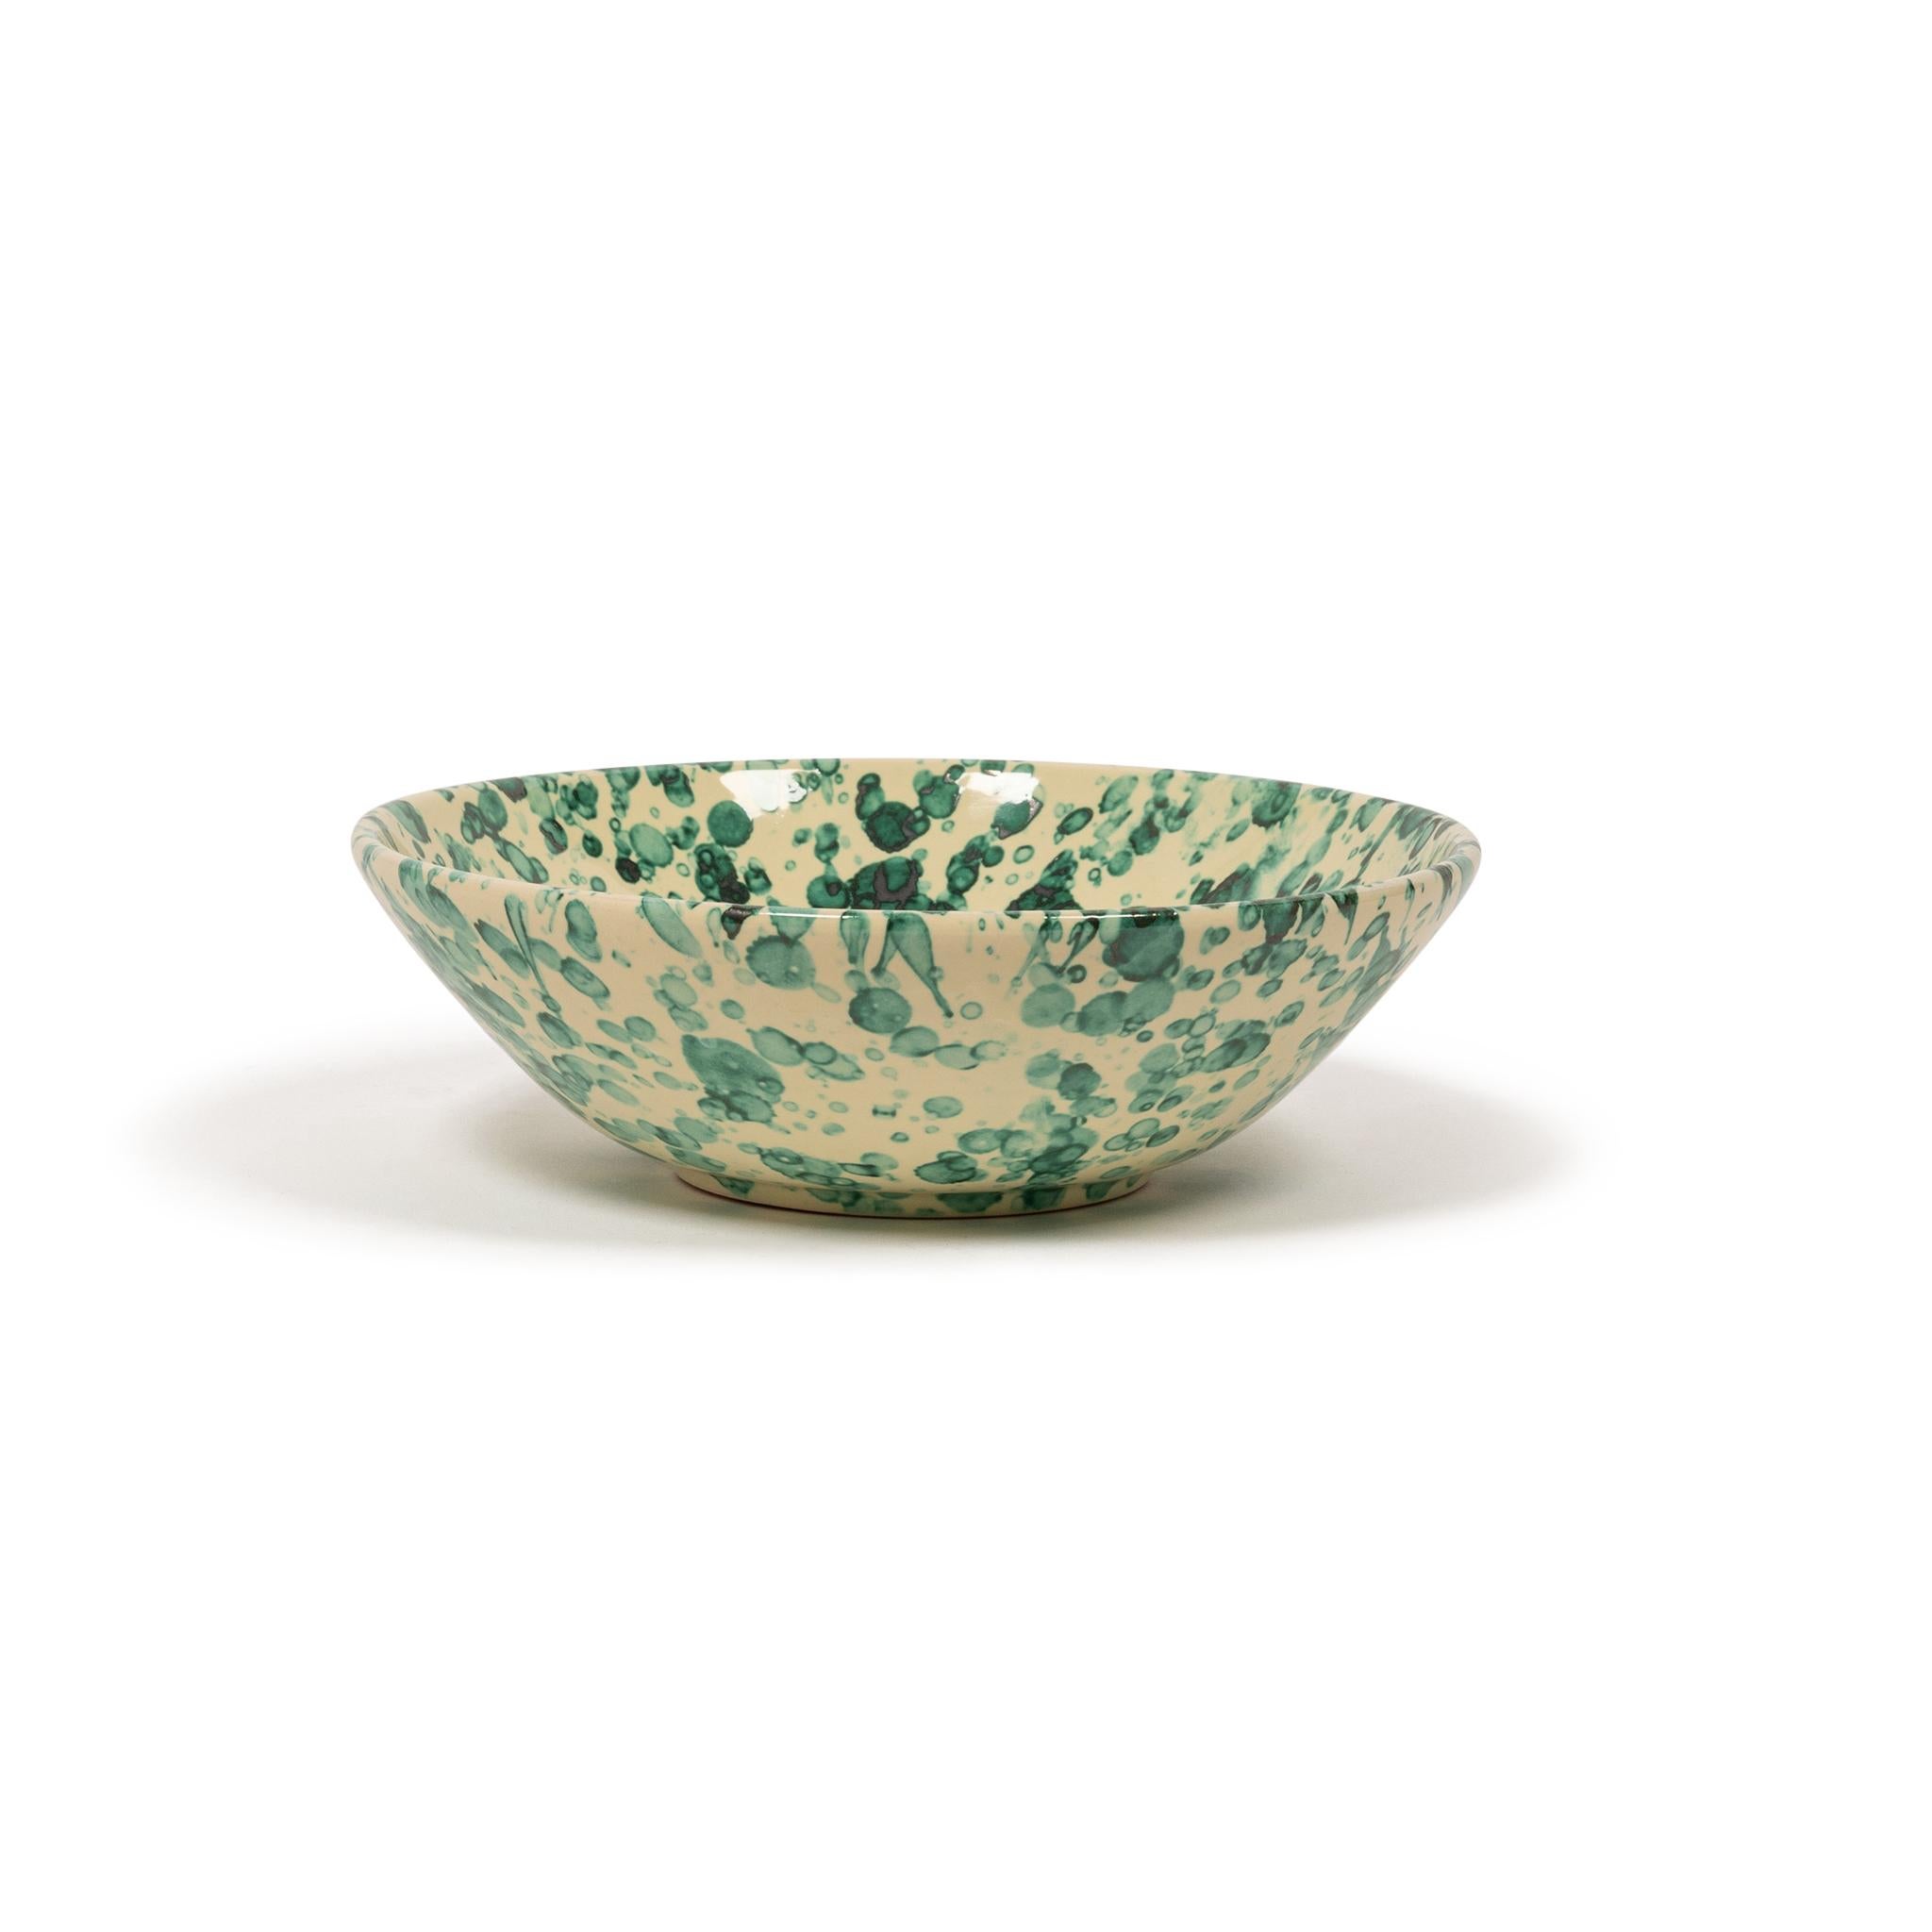 Splatter Bowl, Large, Tan & Ivory, Modern Rustic Design, Large Pasta Bowl, Chic 1